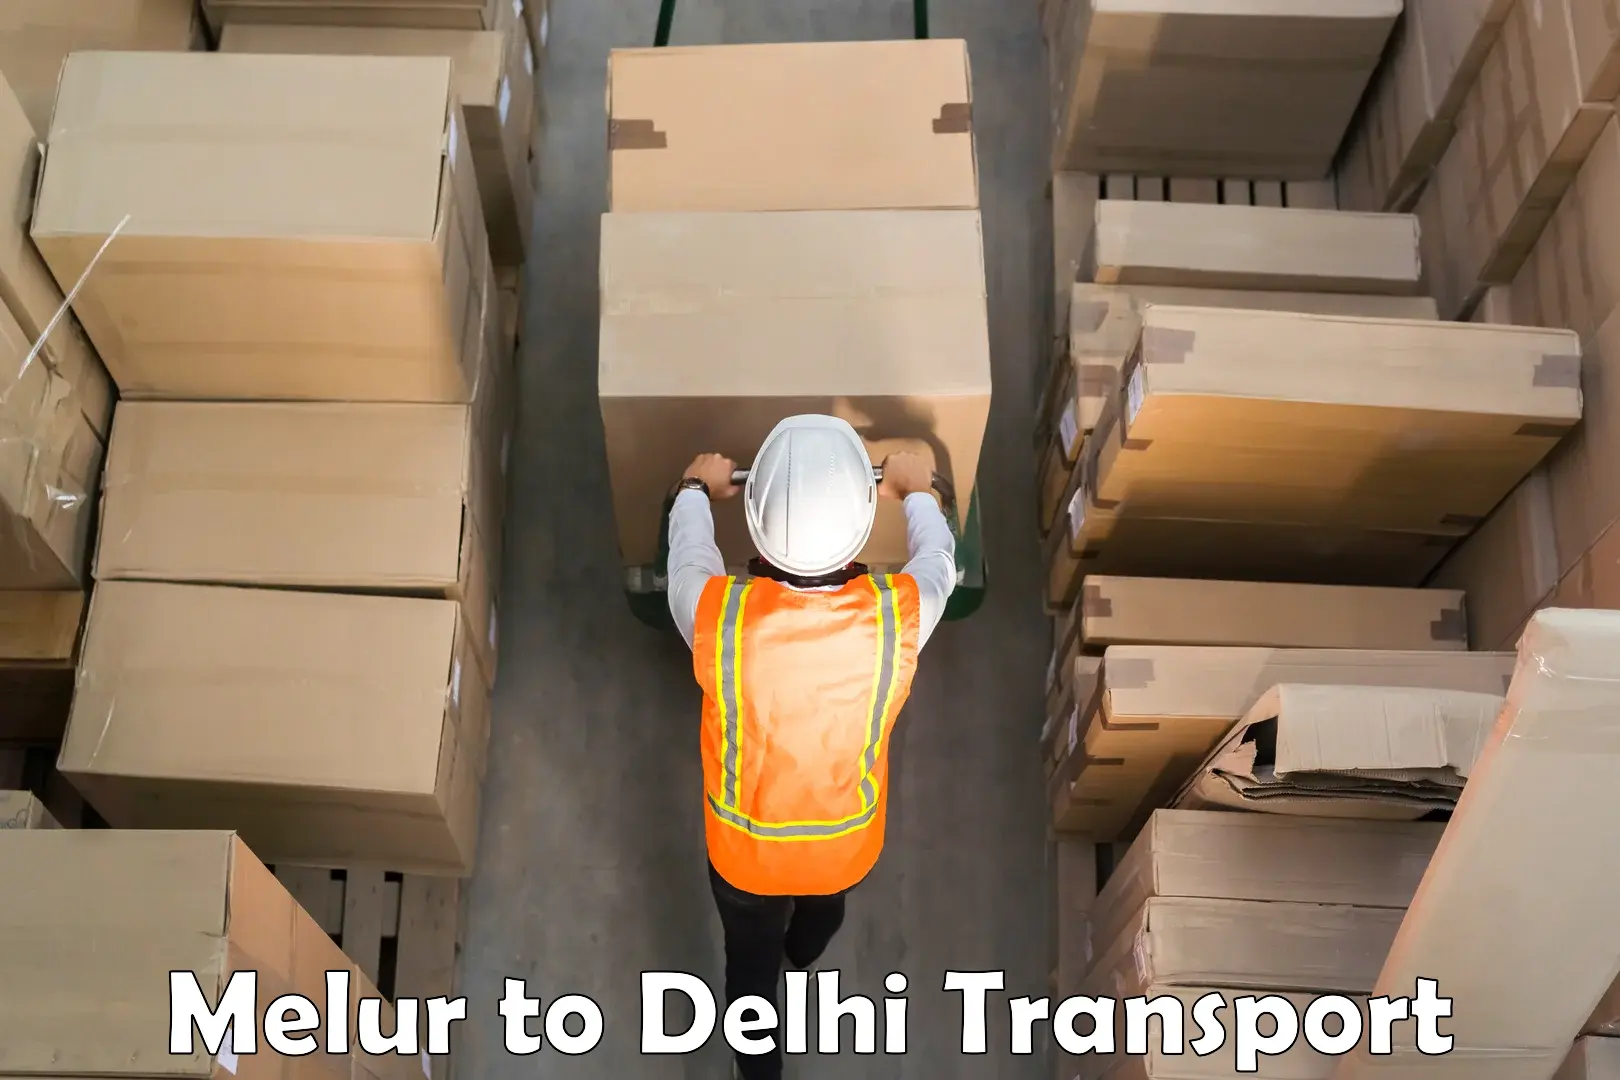 Truck transport companies in India Melur to Burari